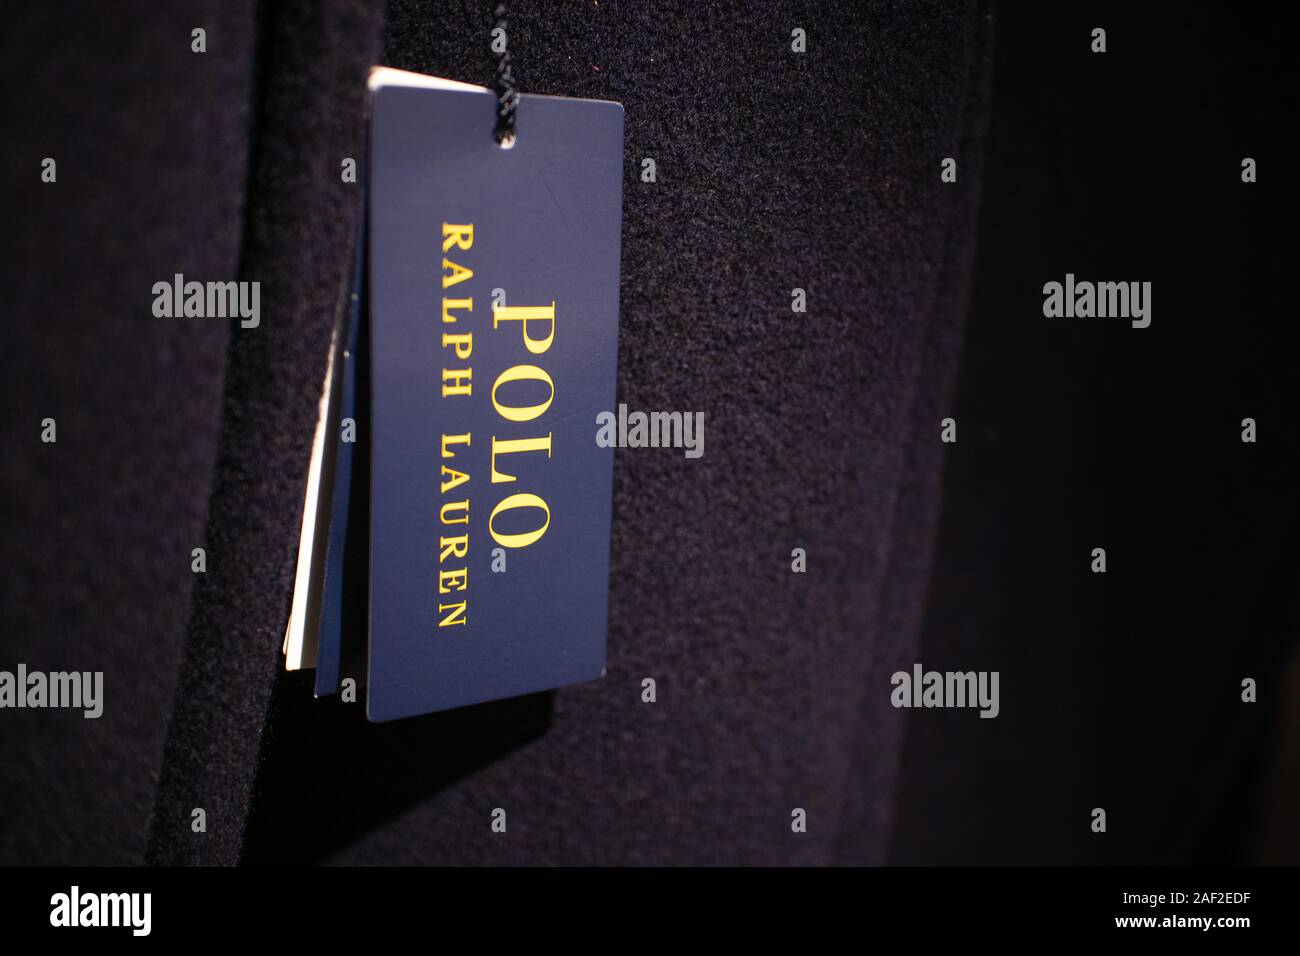 Polo Di Etichetta Ralph Lauren Immagini e Fotos Stock - Alamy